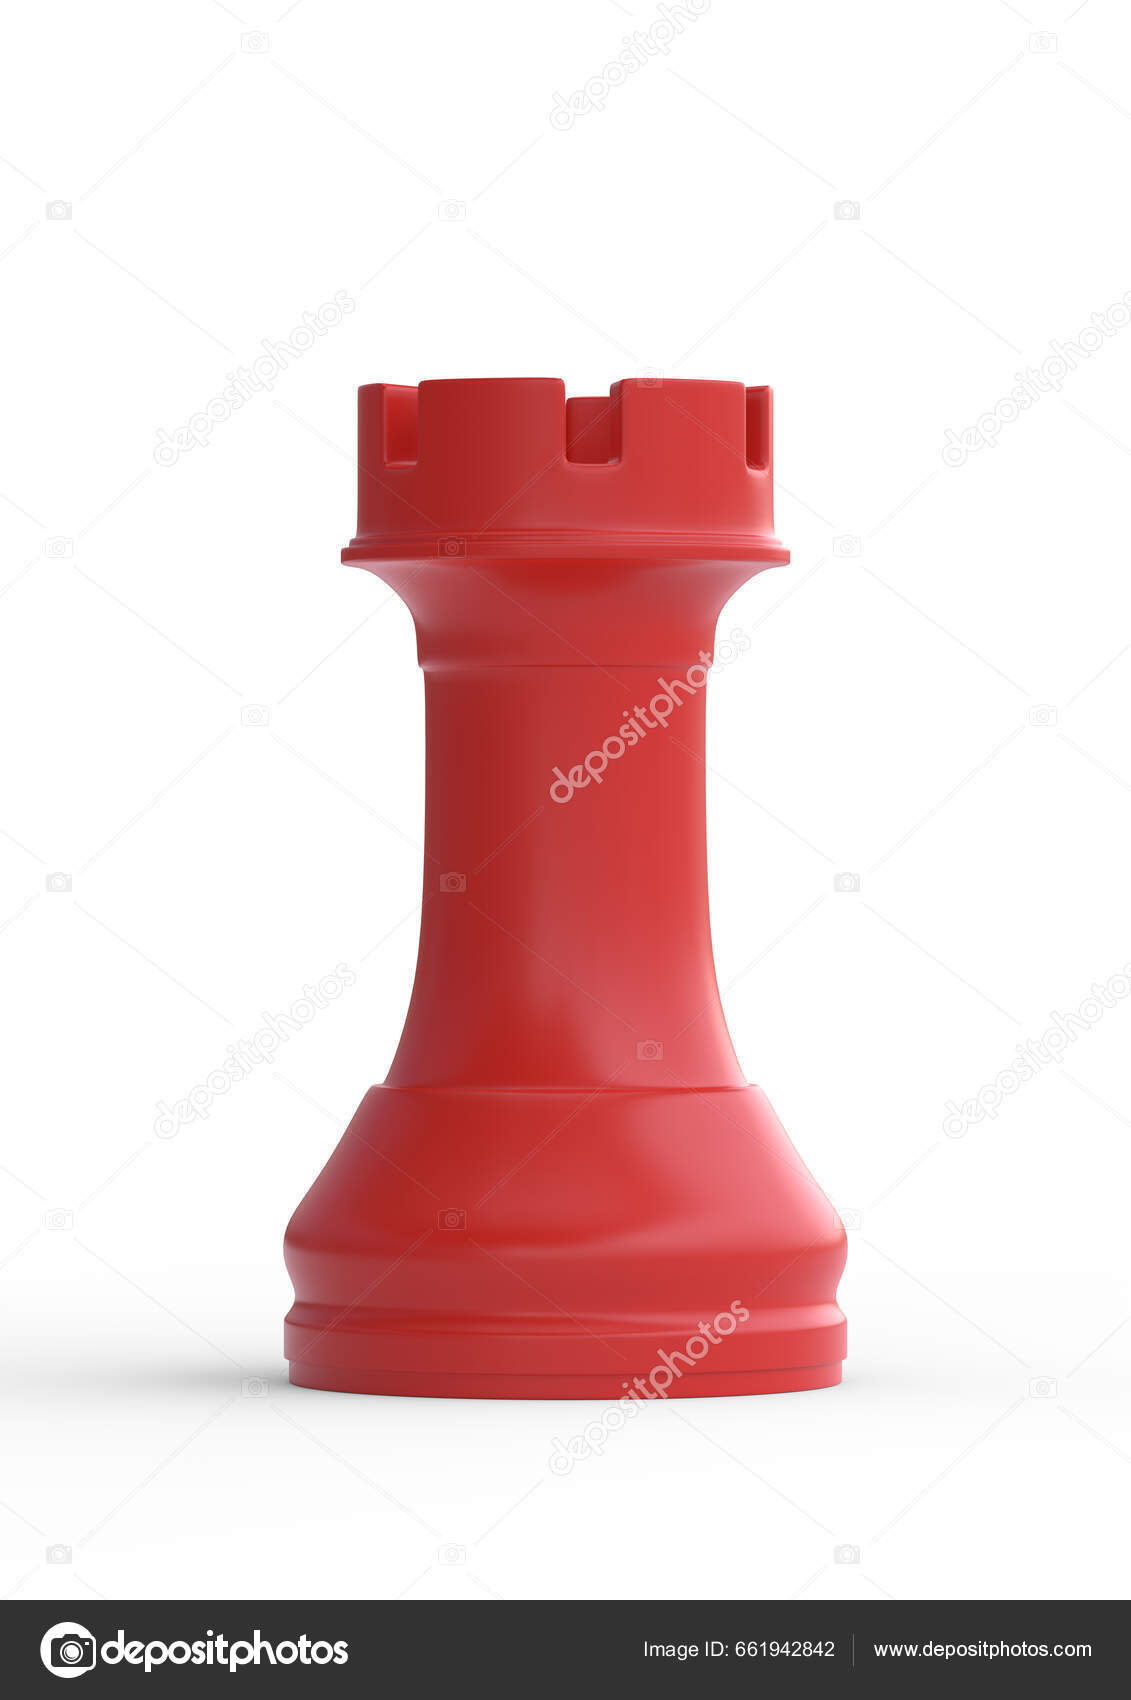 Bispo de xadrez vermelho no tabuleiro de xadrez em renderização em 3d